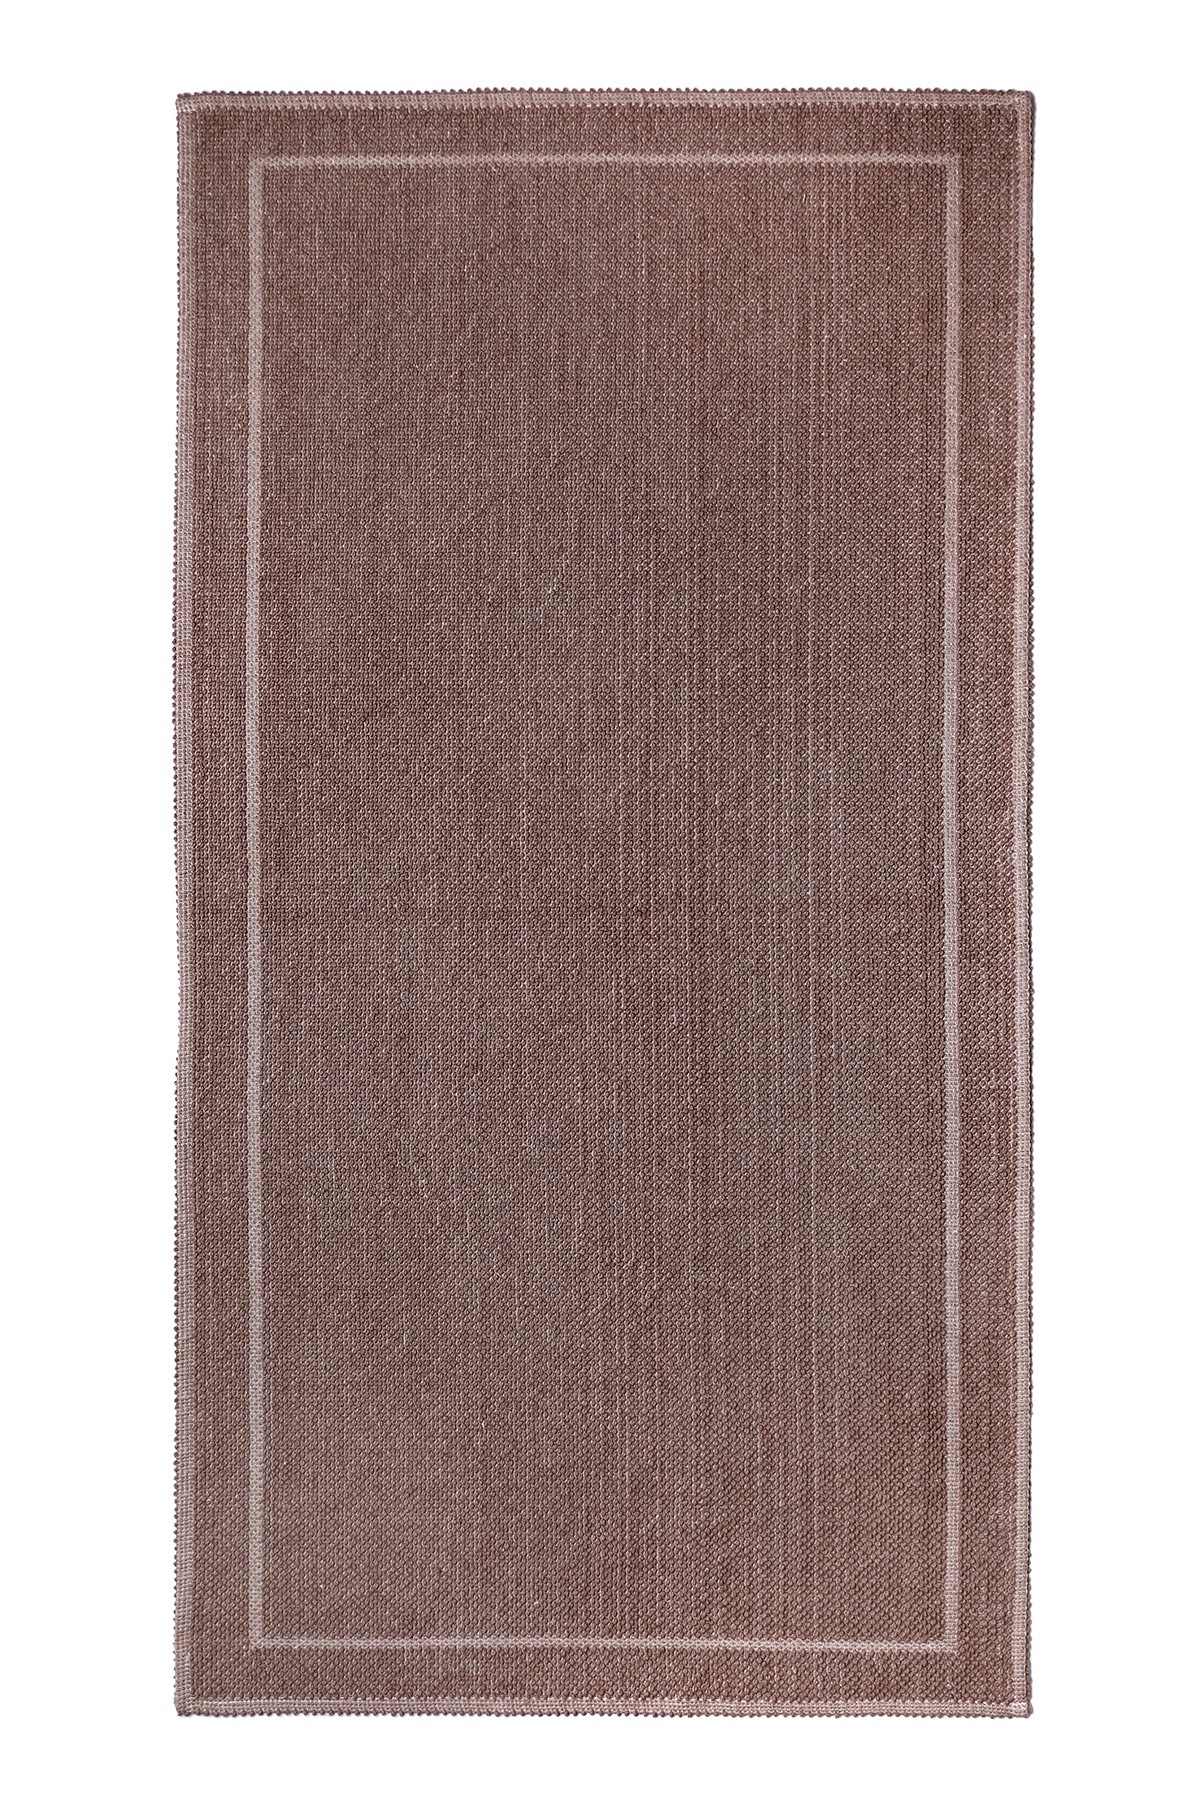 фото Коврик для ванной 50x60 см, alize, plwashed, коричневый, хлопок, plwashed-brown-50x60